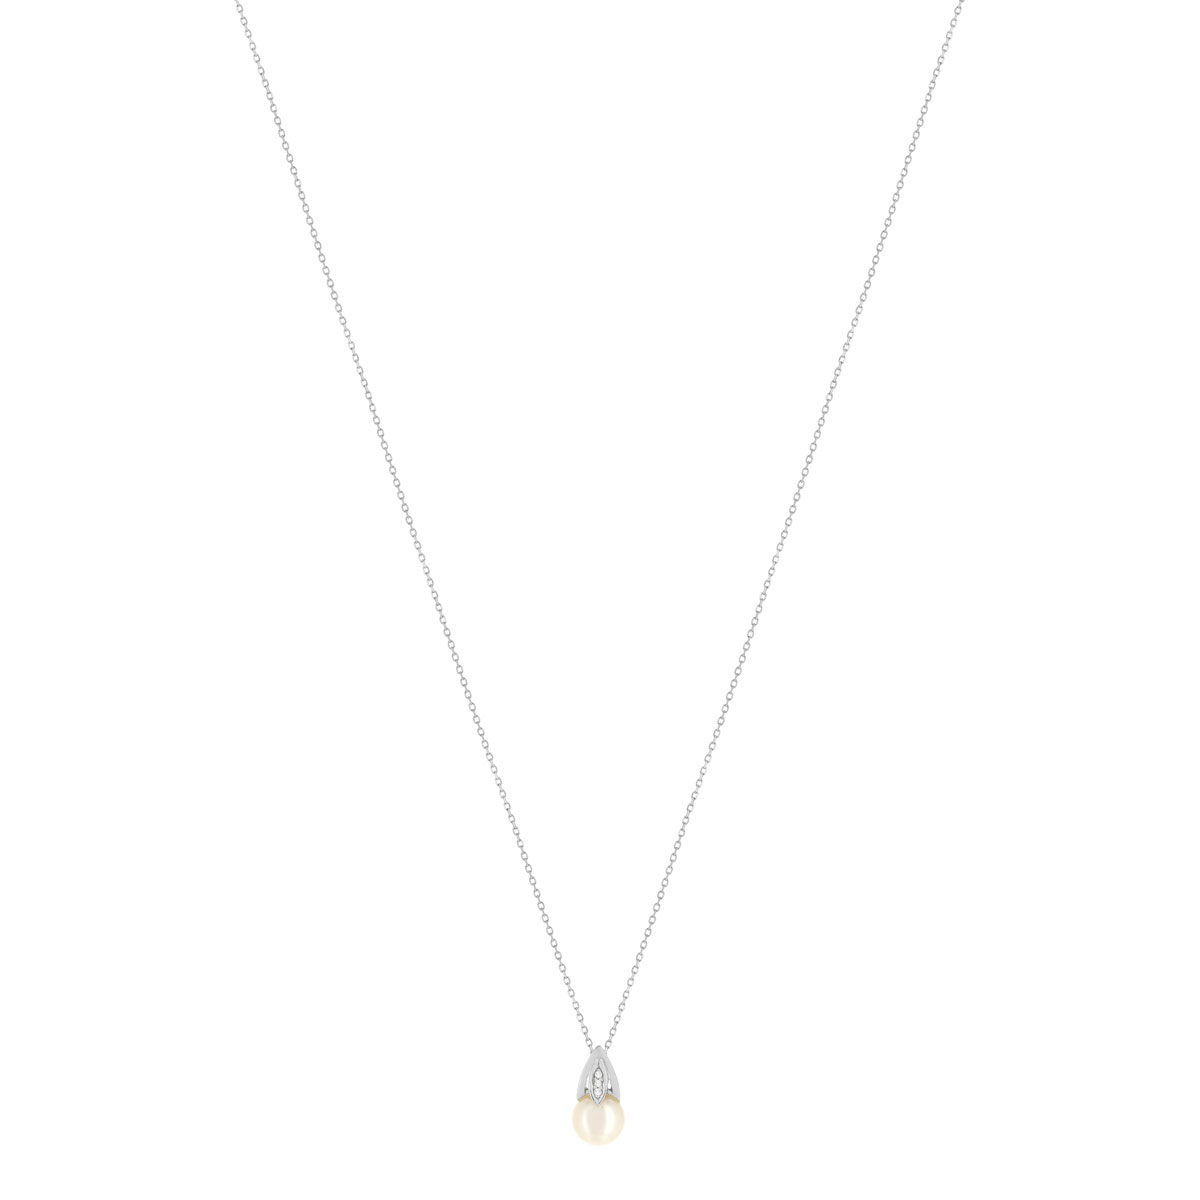 Collier or blanc 375, perle de culture de Chine, diamants. Longueur 45 cm. - vue 2